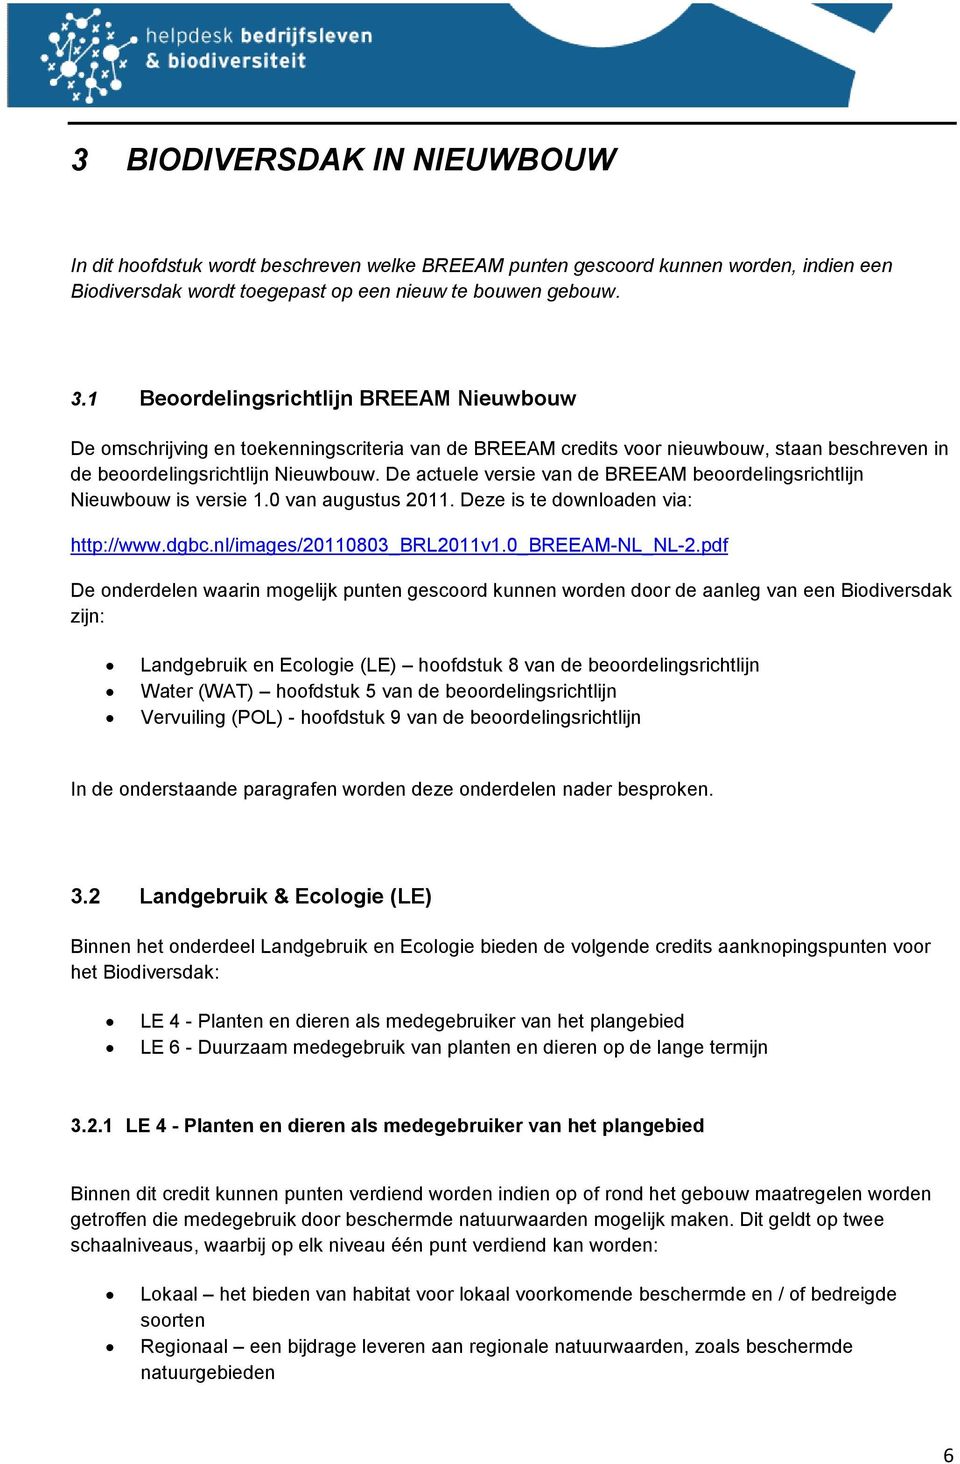 De actuele versie van de BREEAM beoordelingsrichtlijn Nieuwbouw is versie 1.0 van augustus 2011. Deze is te downloaden via: http://www.dgbc.nl/images/20110803_brl2011v1.0_breeam-nl_nl-2.